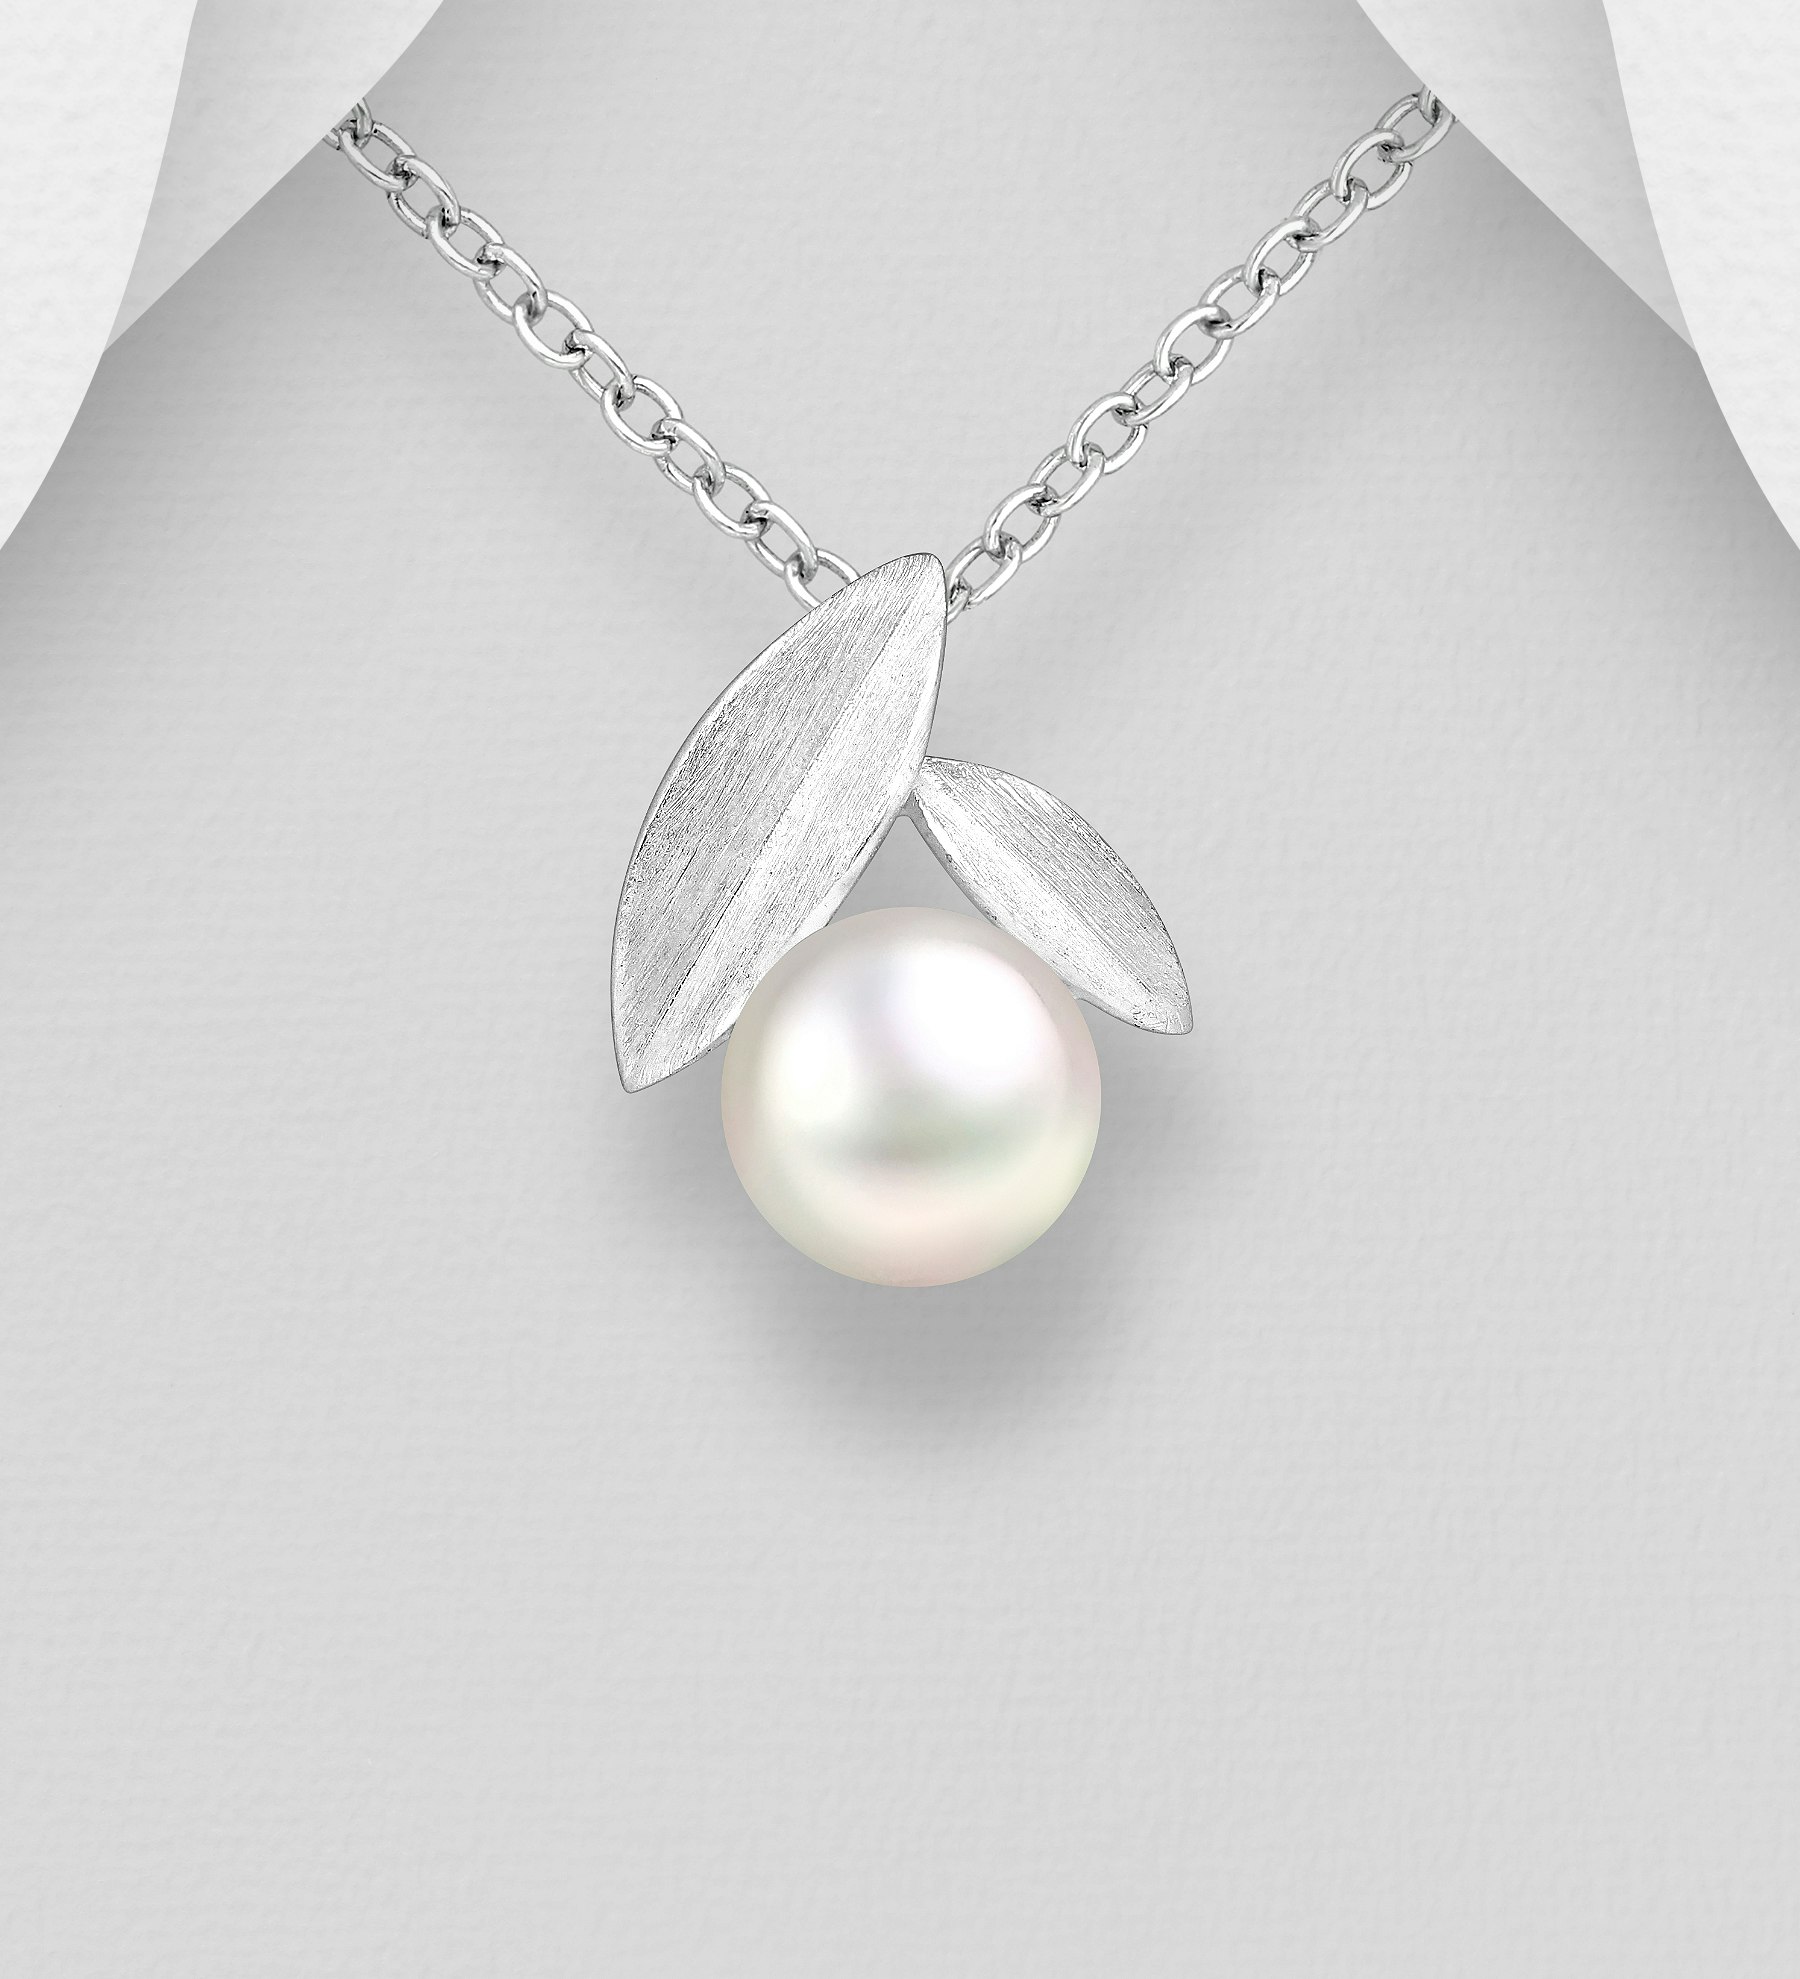 Silverhalsband Sötvattenpärla med eleganta blad i silver - halsband till tjej/ dam i äkta 925 sterling silver